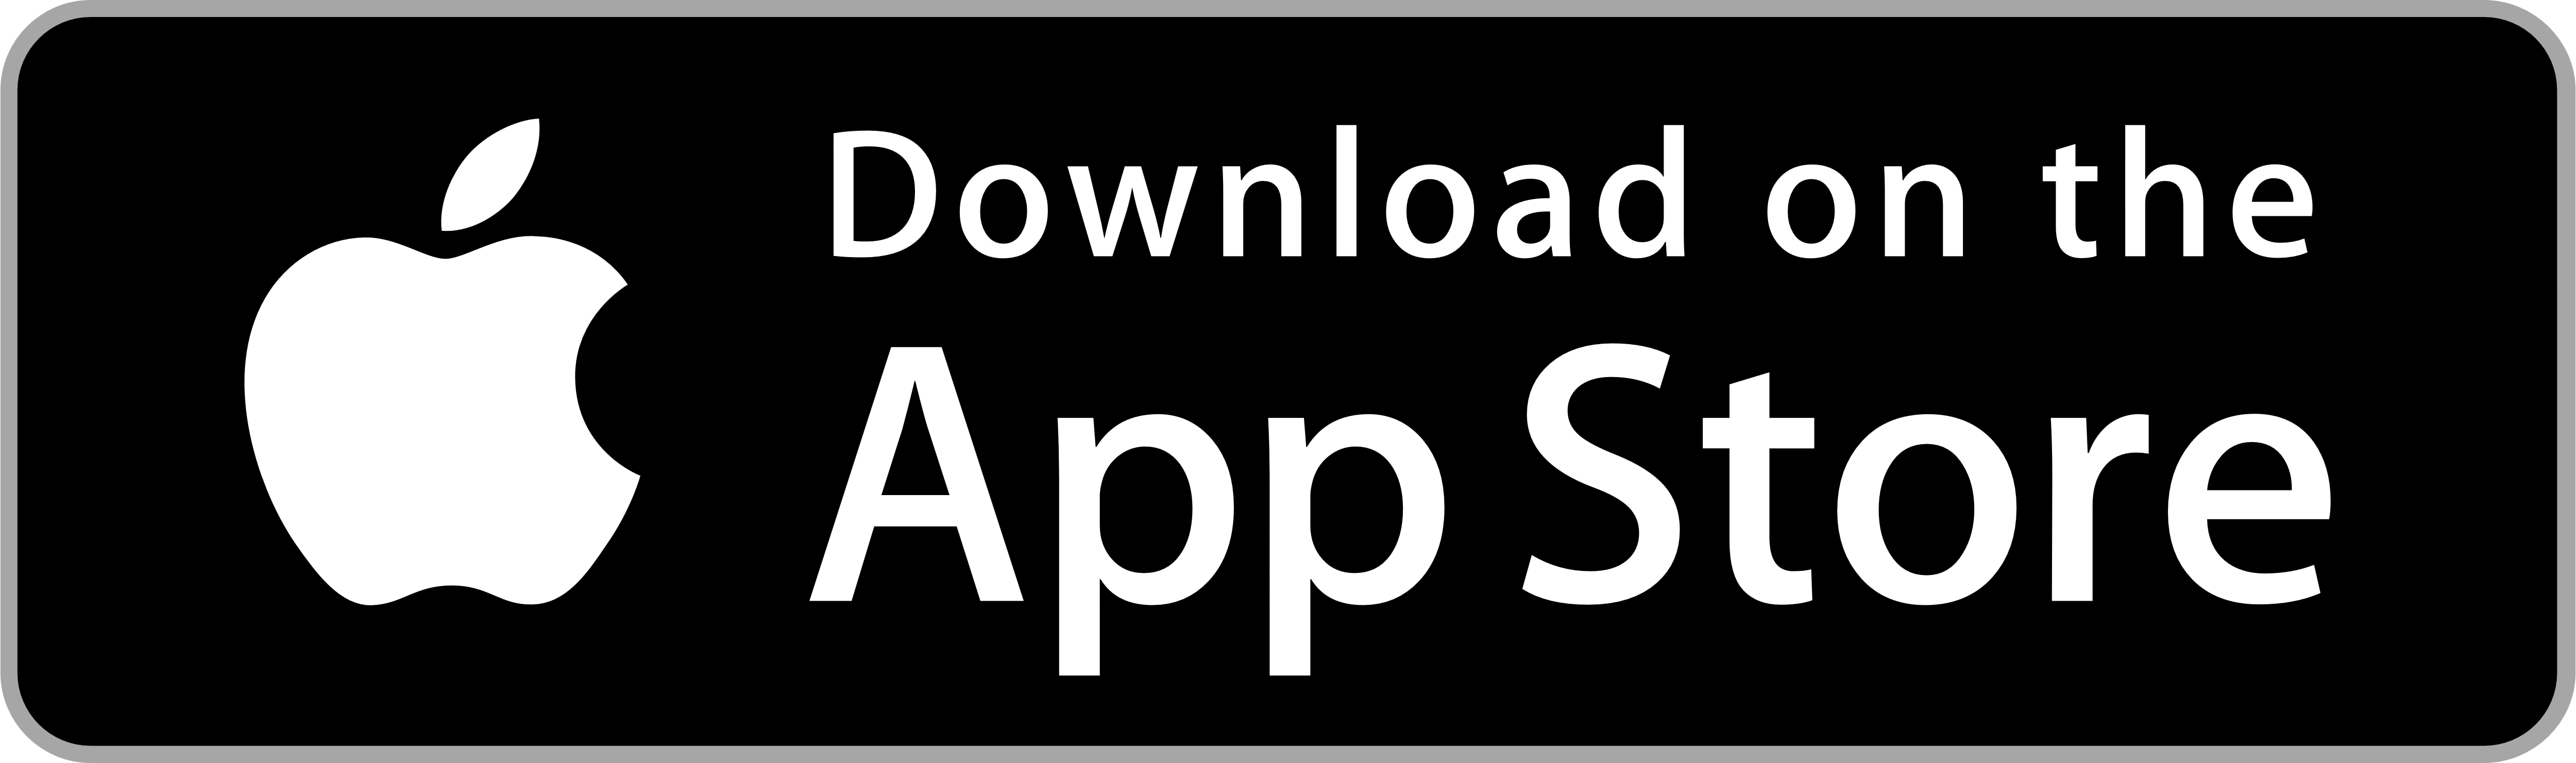 App Store - Logos Download